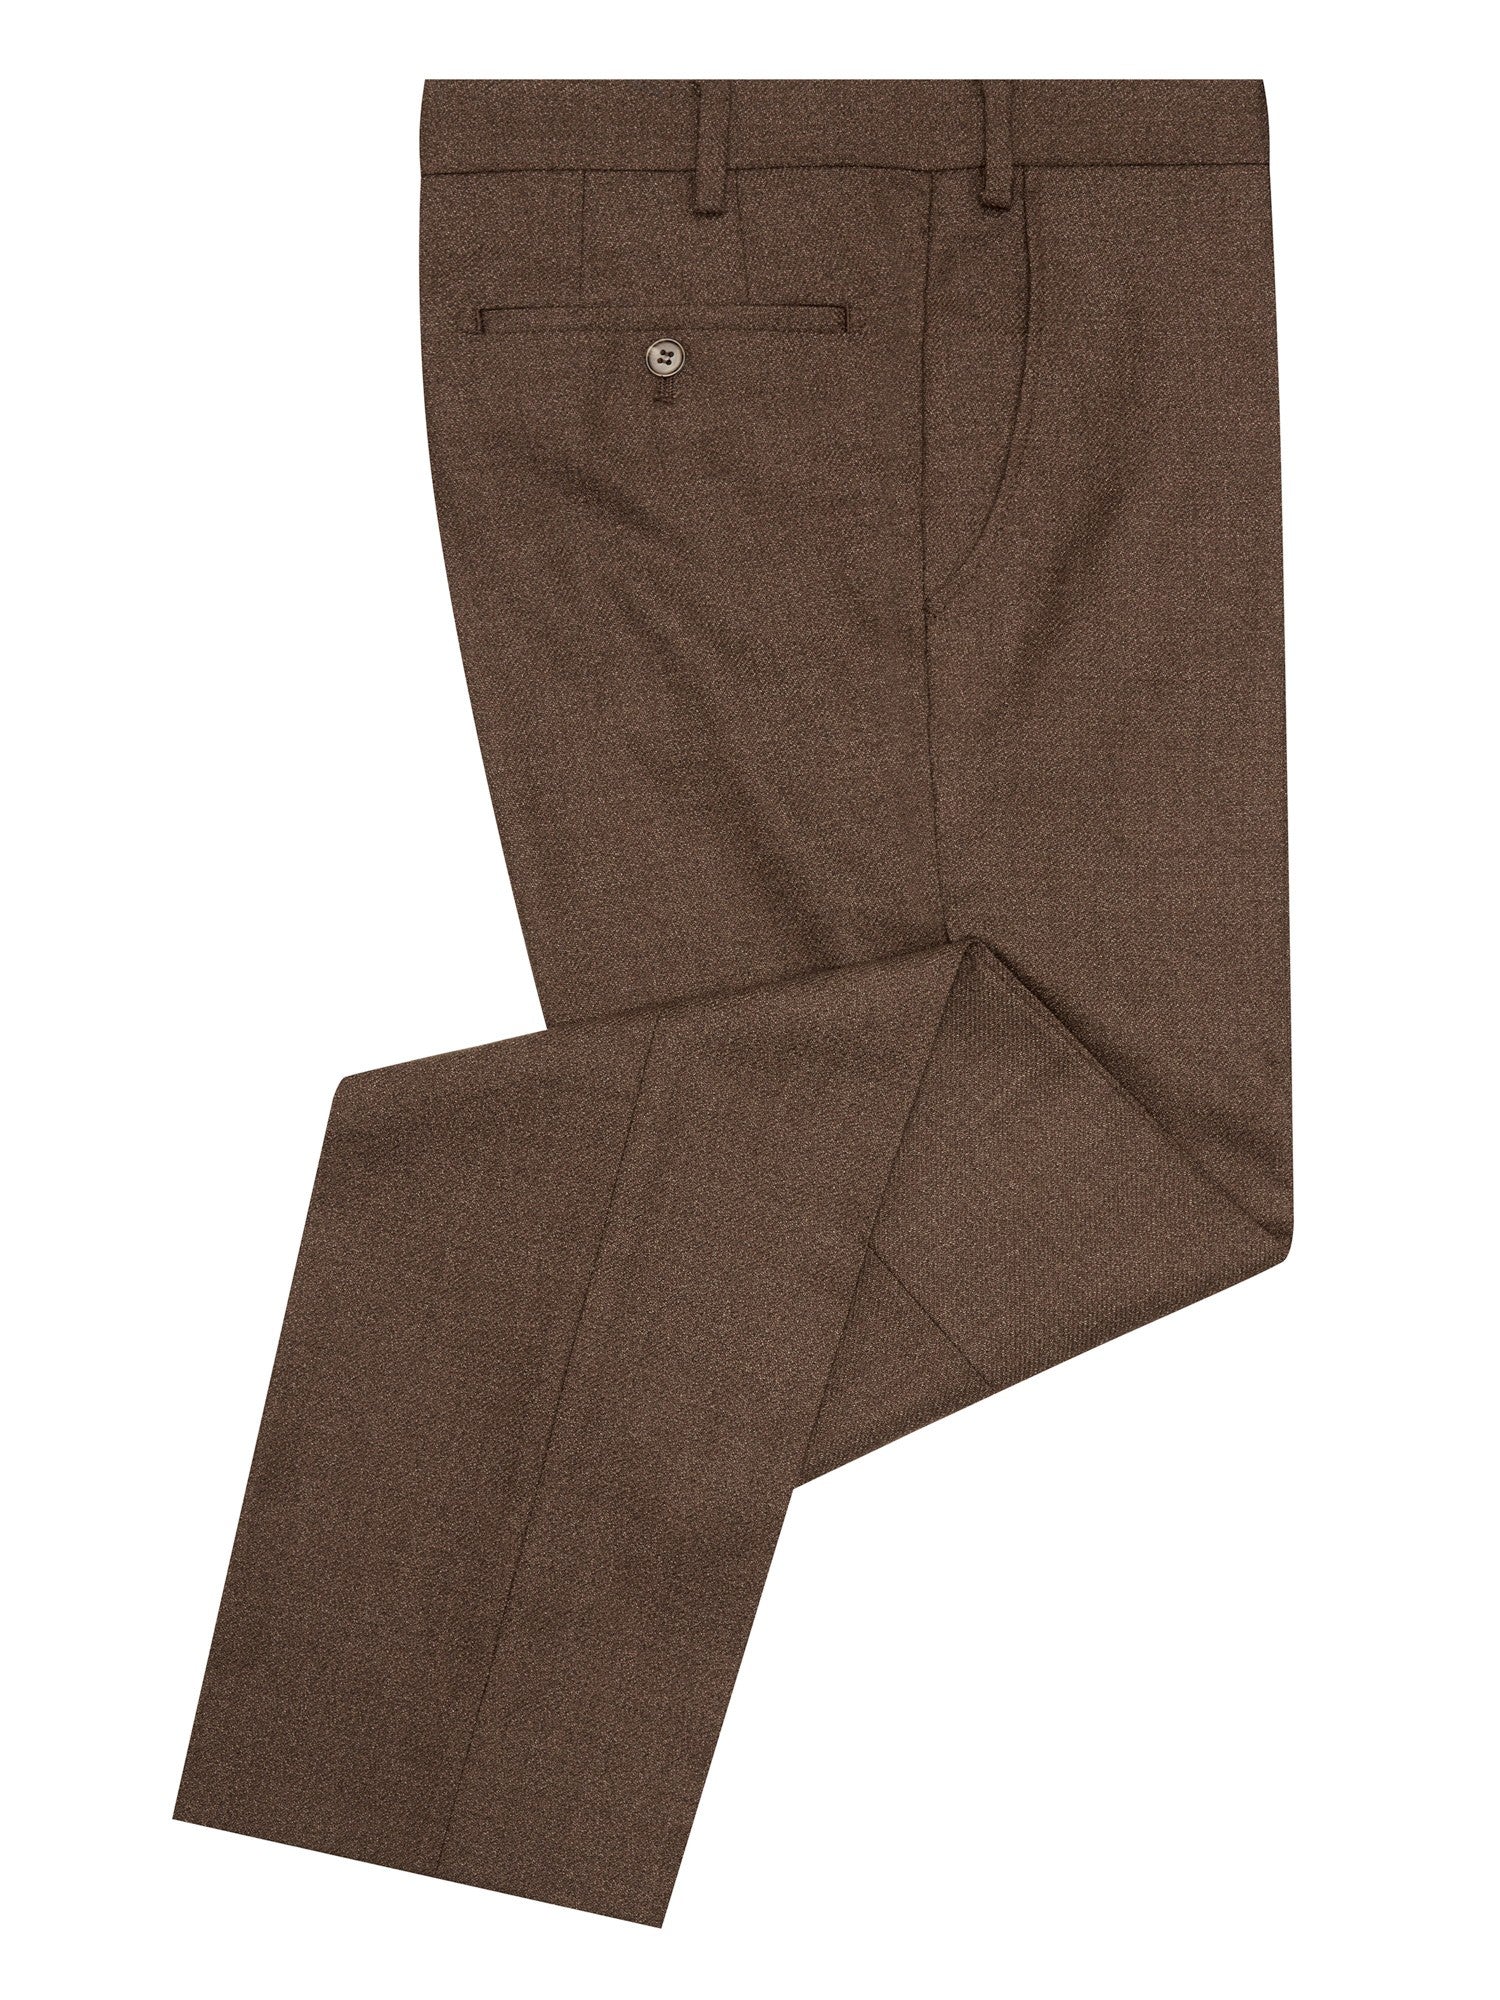 Douglas Brown Mix & Match Suit Trousers Short Length